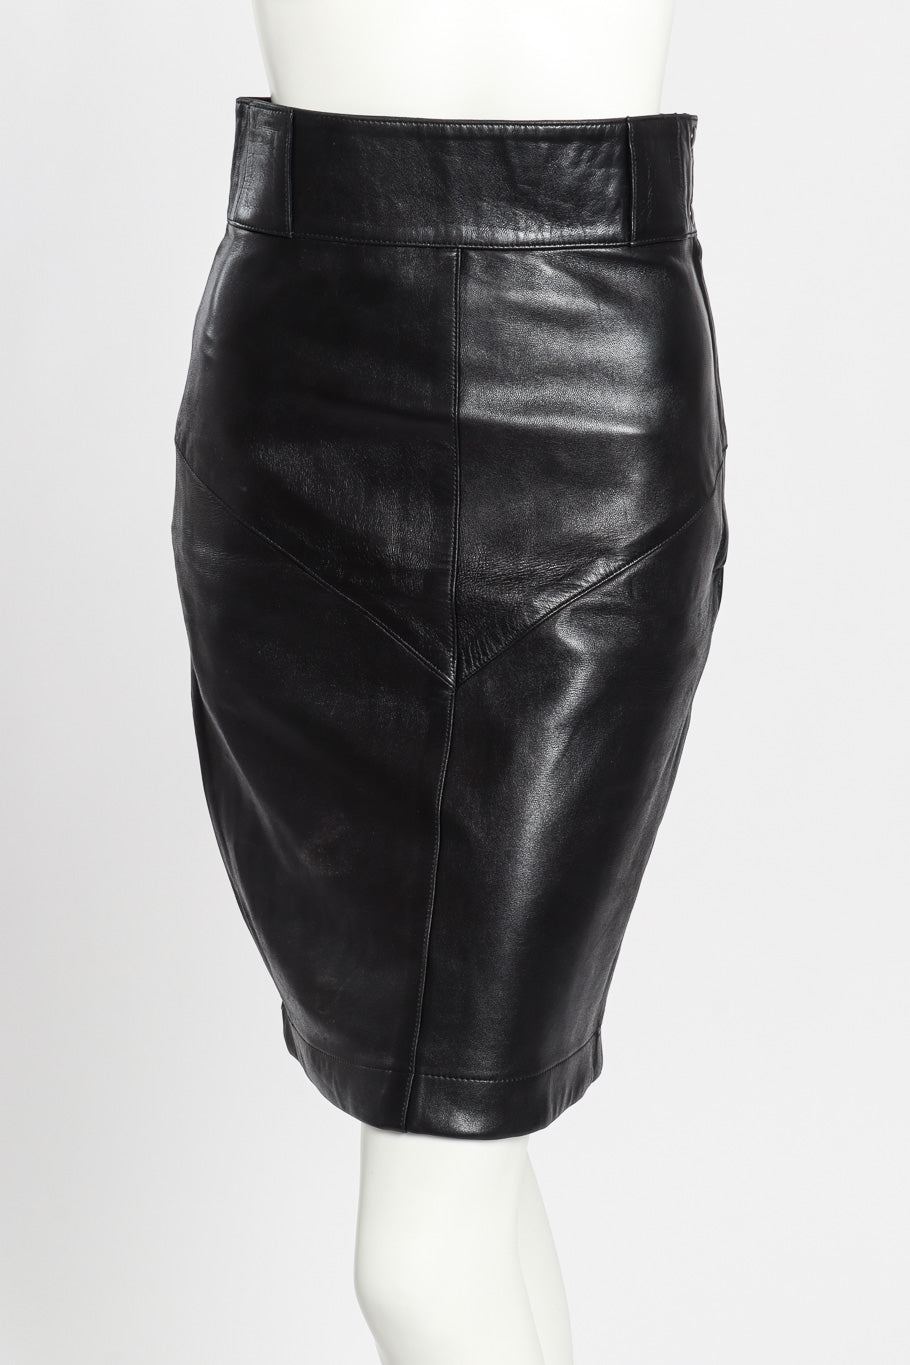 Vintage Alaia Leather Pencil Skirt front on mannequin closeup @recessla